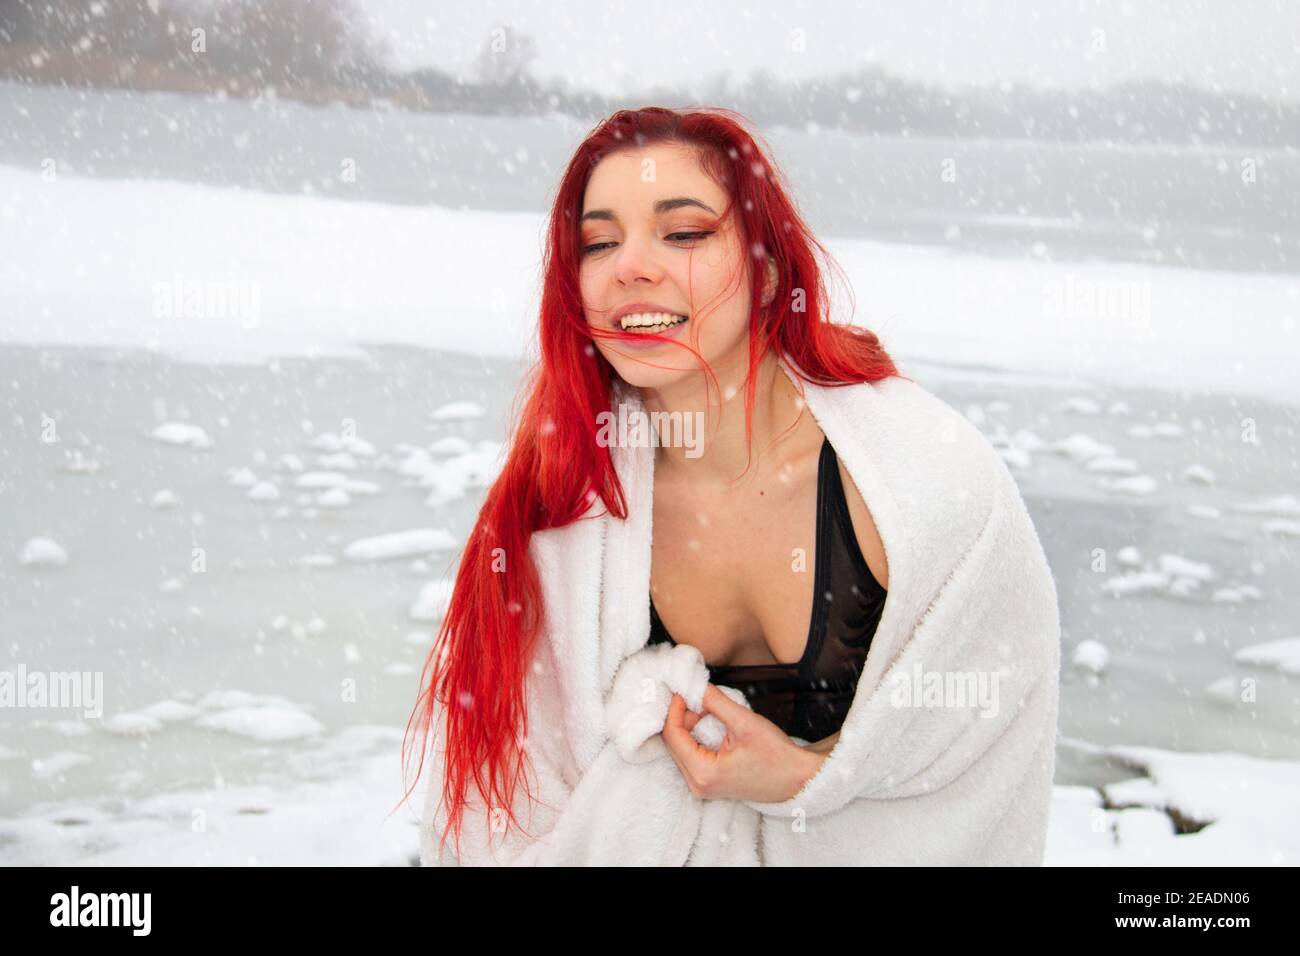 Ritratto invernale innevato di una donna rossa all'aperto in costume da bagno, avvolto in un asciugamano al lago di nuoto in acqua aperta, terapia fredda e indurimento sulla neve Foto Stock